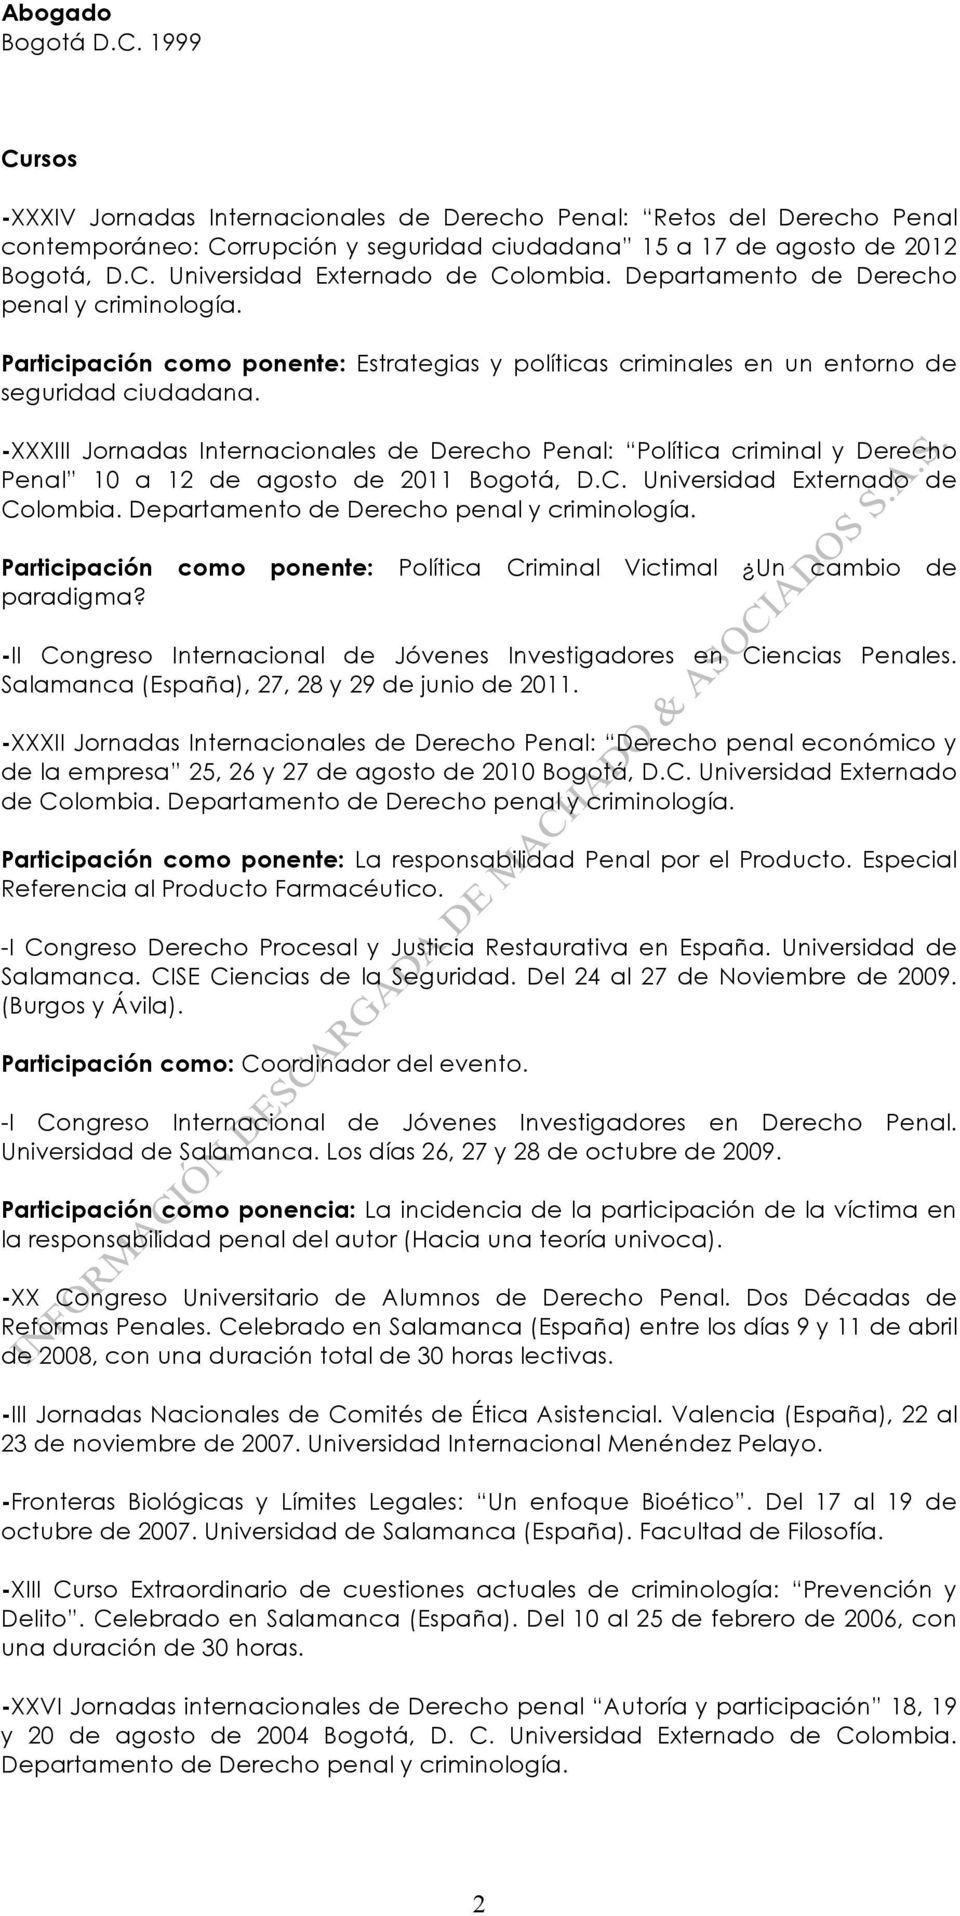 -XXXIII Jornadas Internacionales de Derecho Penal: Política criminal y Derecho Penal 10 a 12 de agosto de 2011 Bogotá, D.C. Universidad Externado de Colombia.